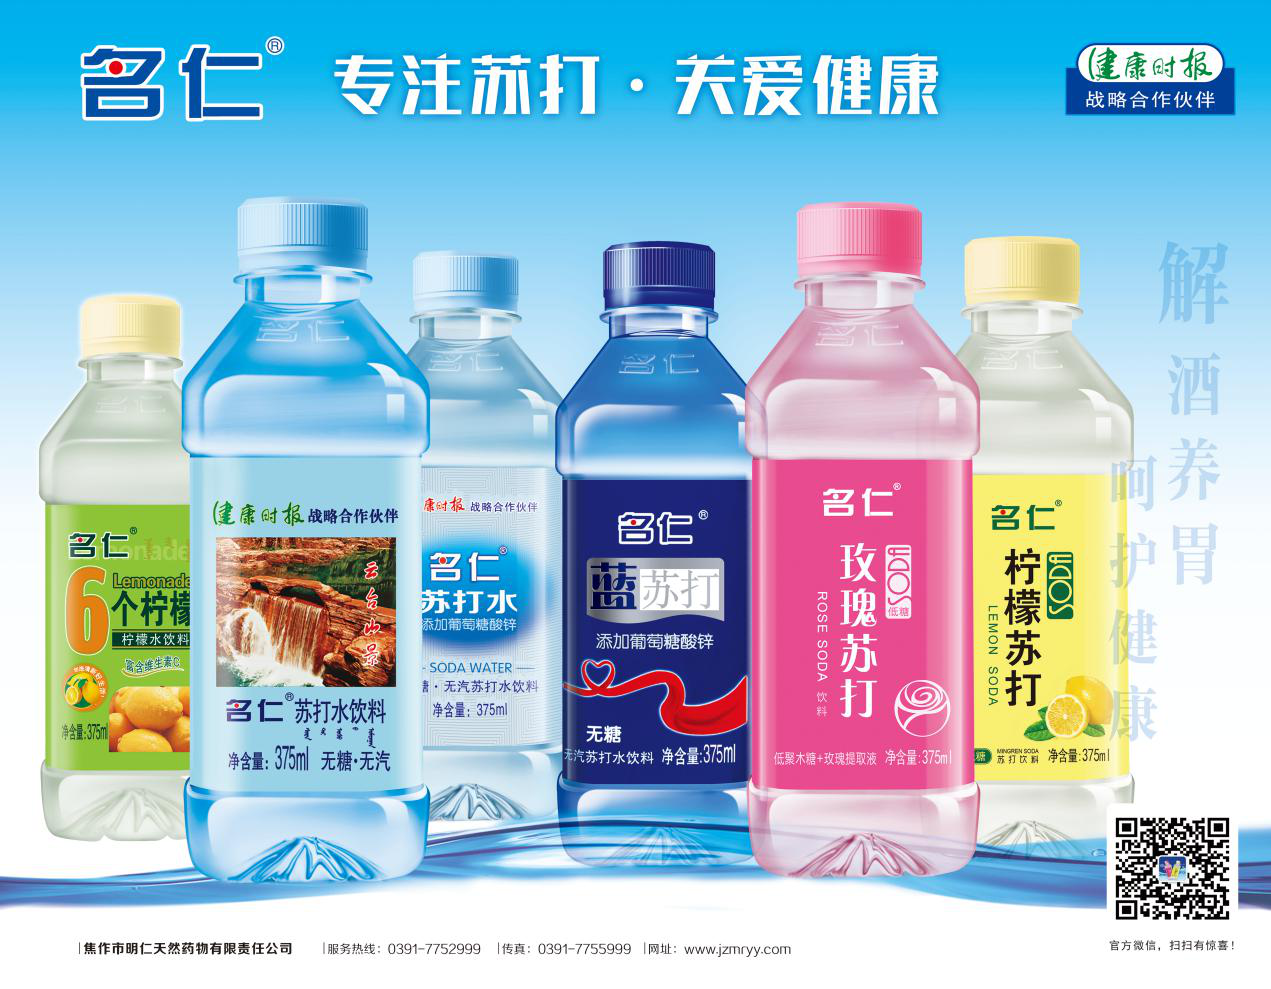 名仁苏打水5月15日开启涨价-FoodTalks全球食品资讯